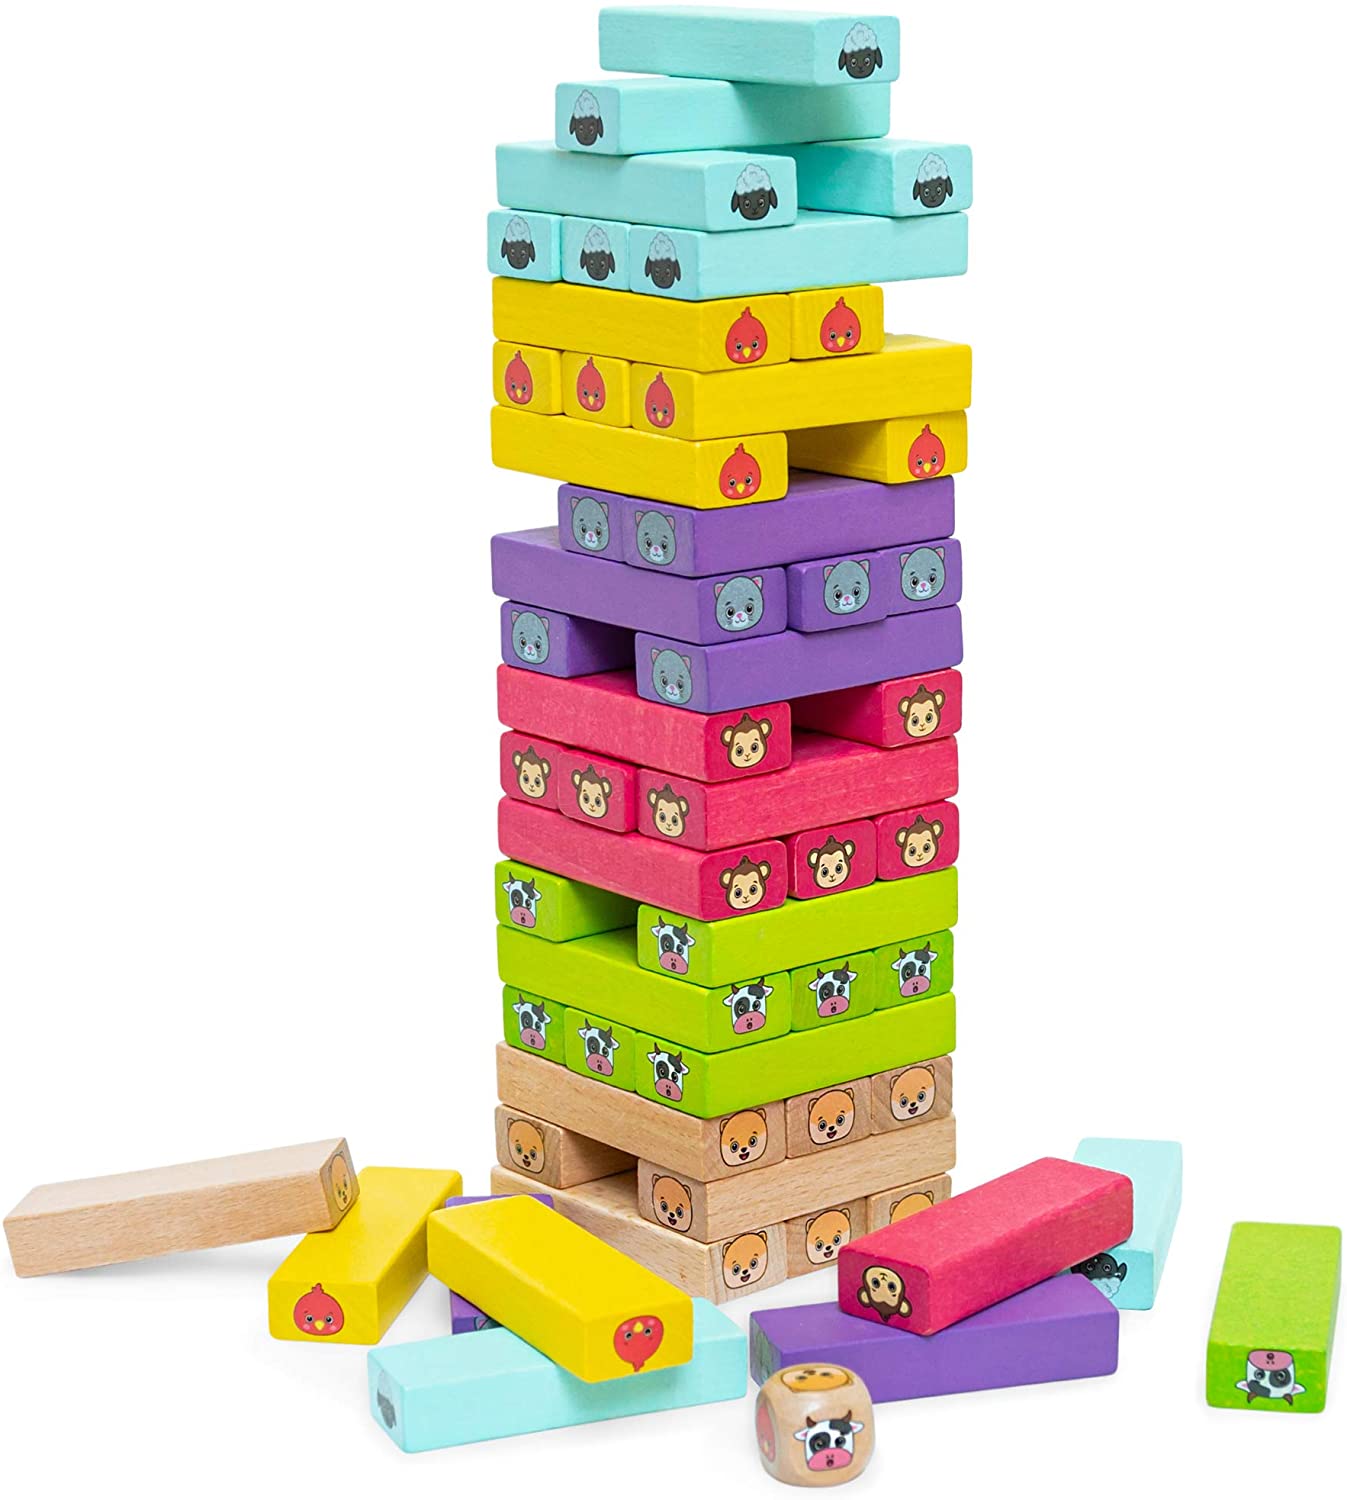 54pcs Wooden Jenga Game Tower Children's Kids Building Block Tumbling Stacking